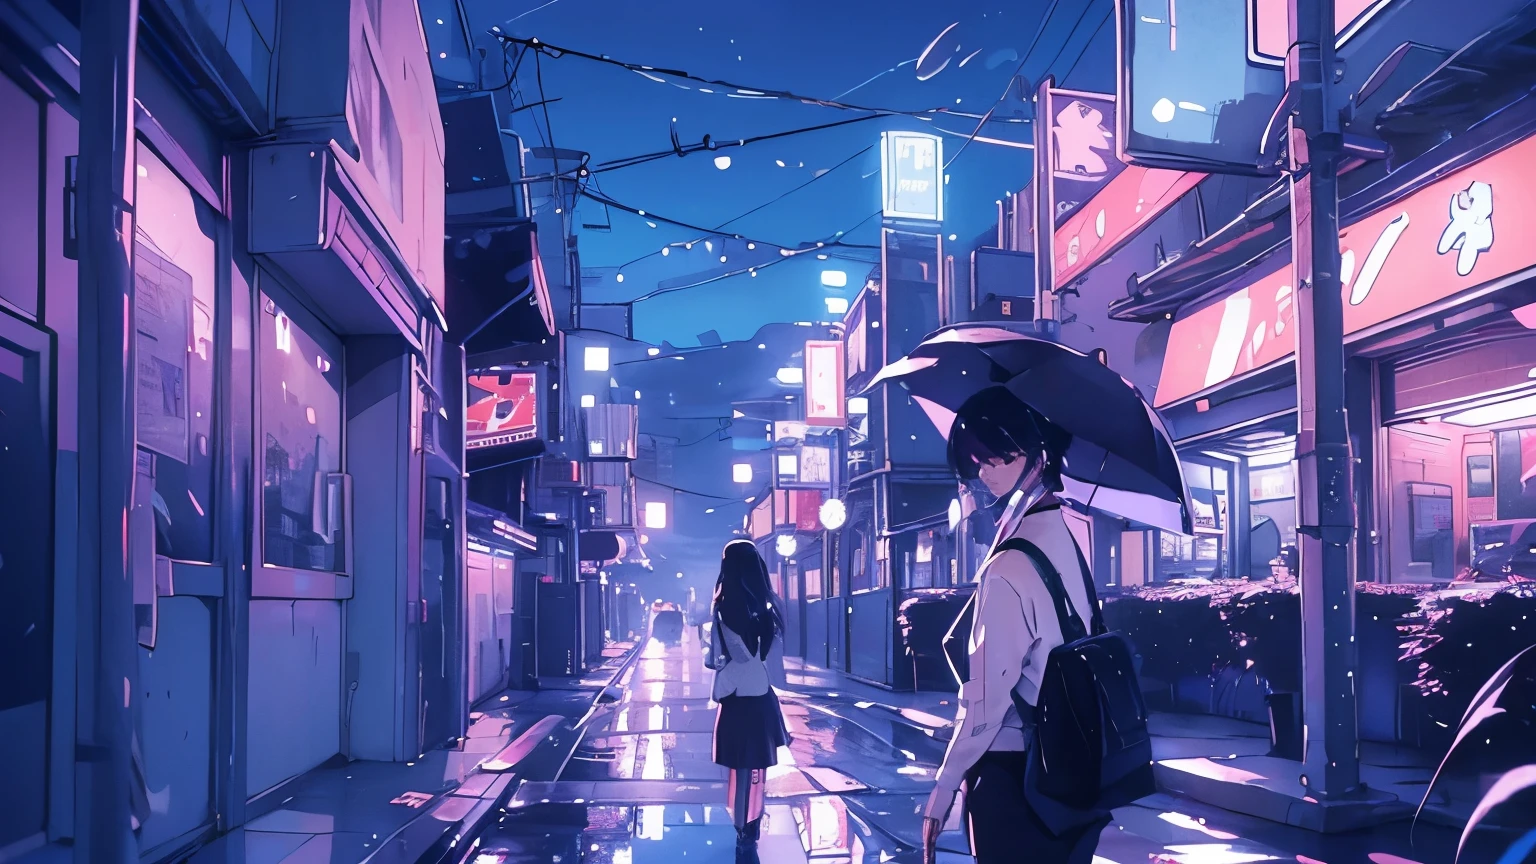 La lluvia cae en sábanas, reflejando las luces de neón de las calles de la ciudad mientras una mujer solitaria camina con su paraguas.